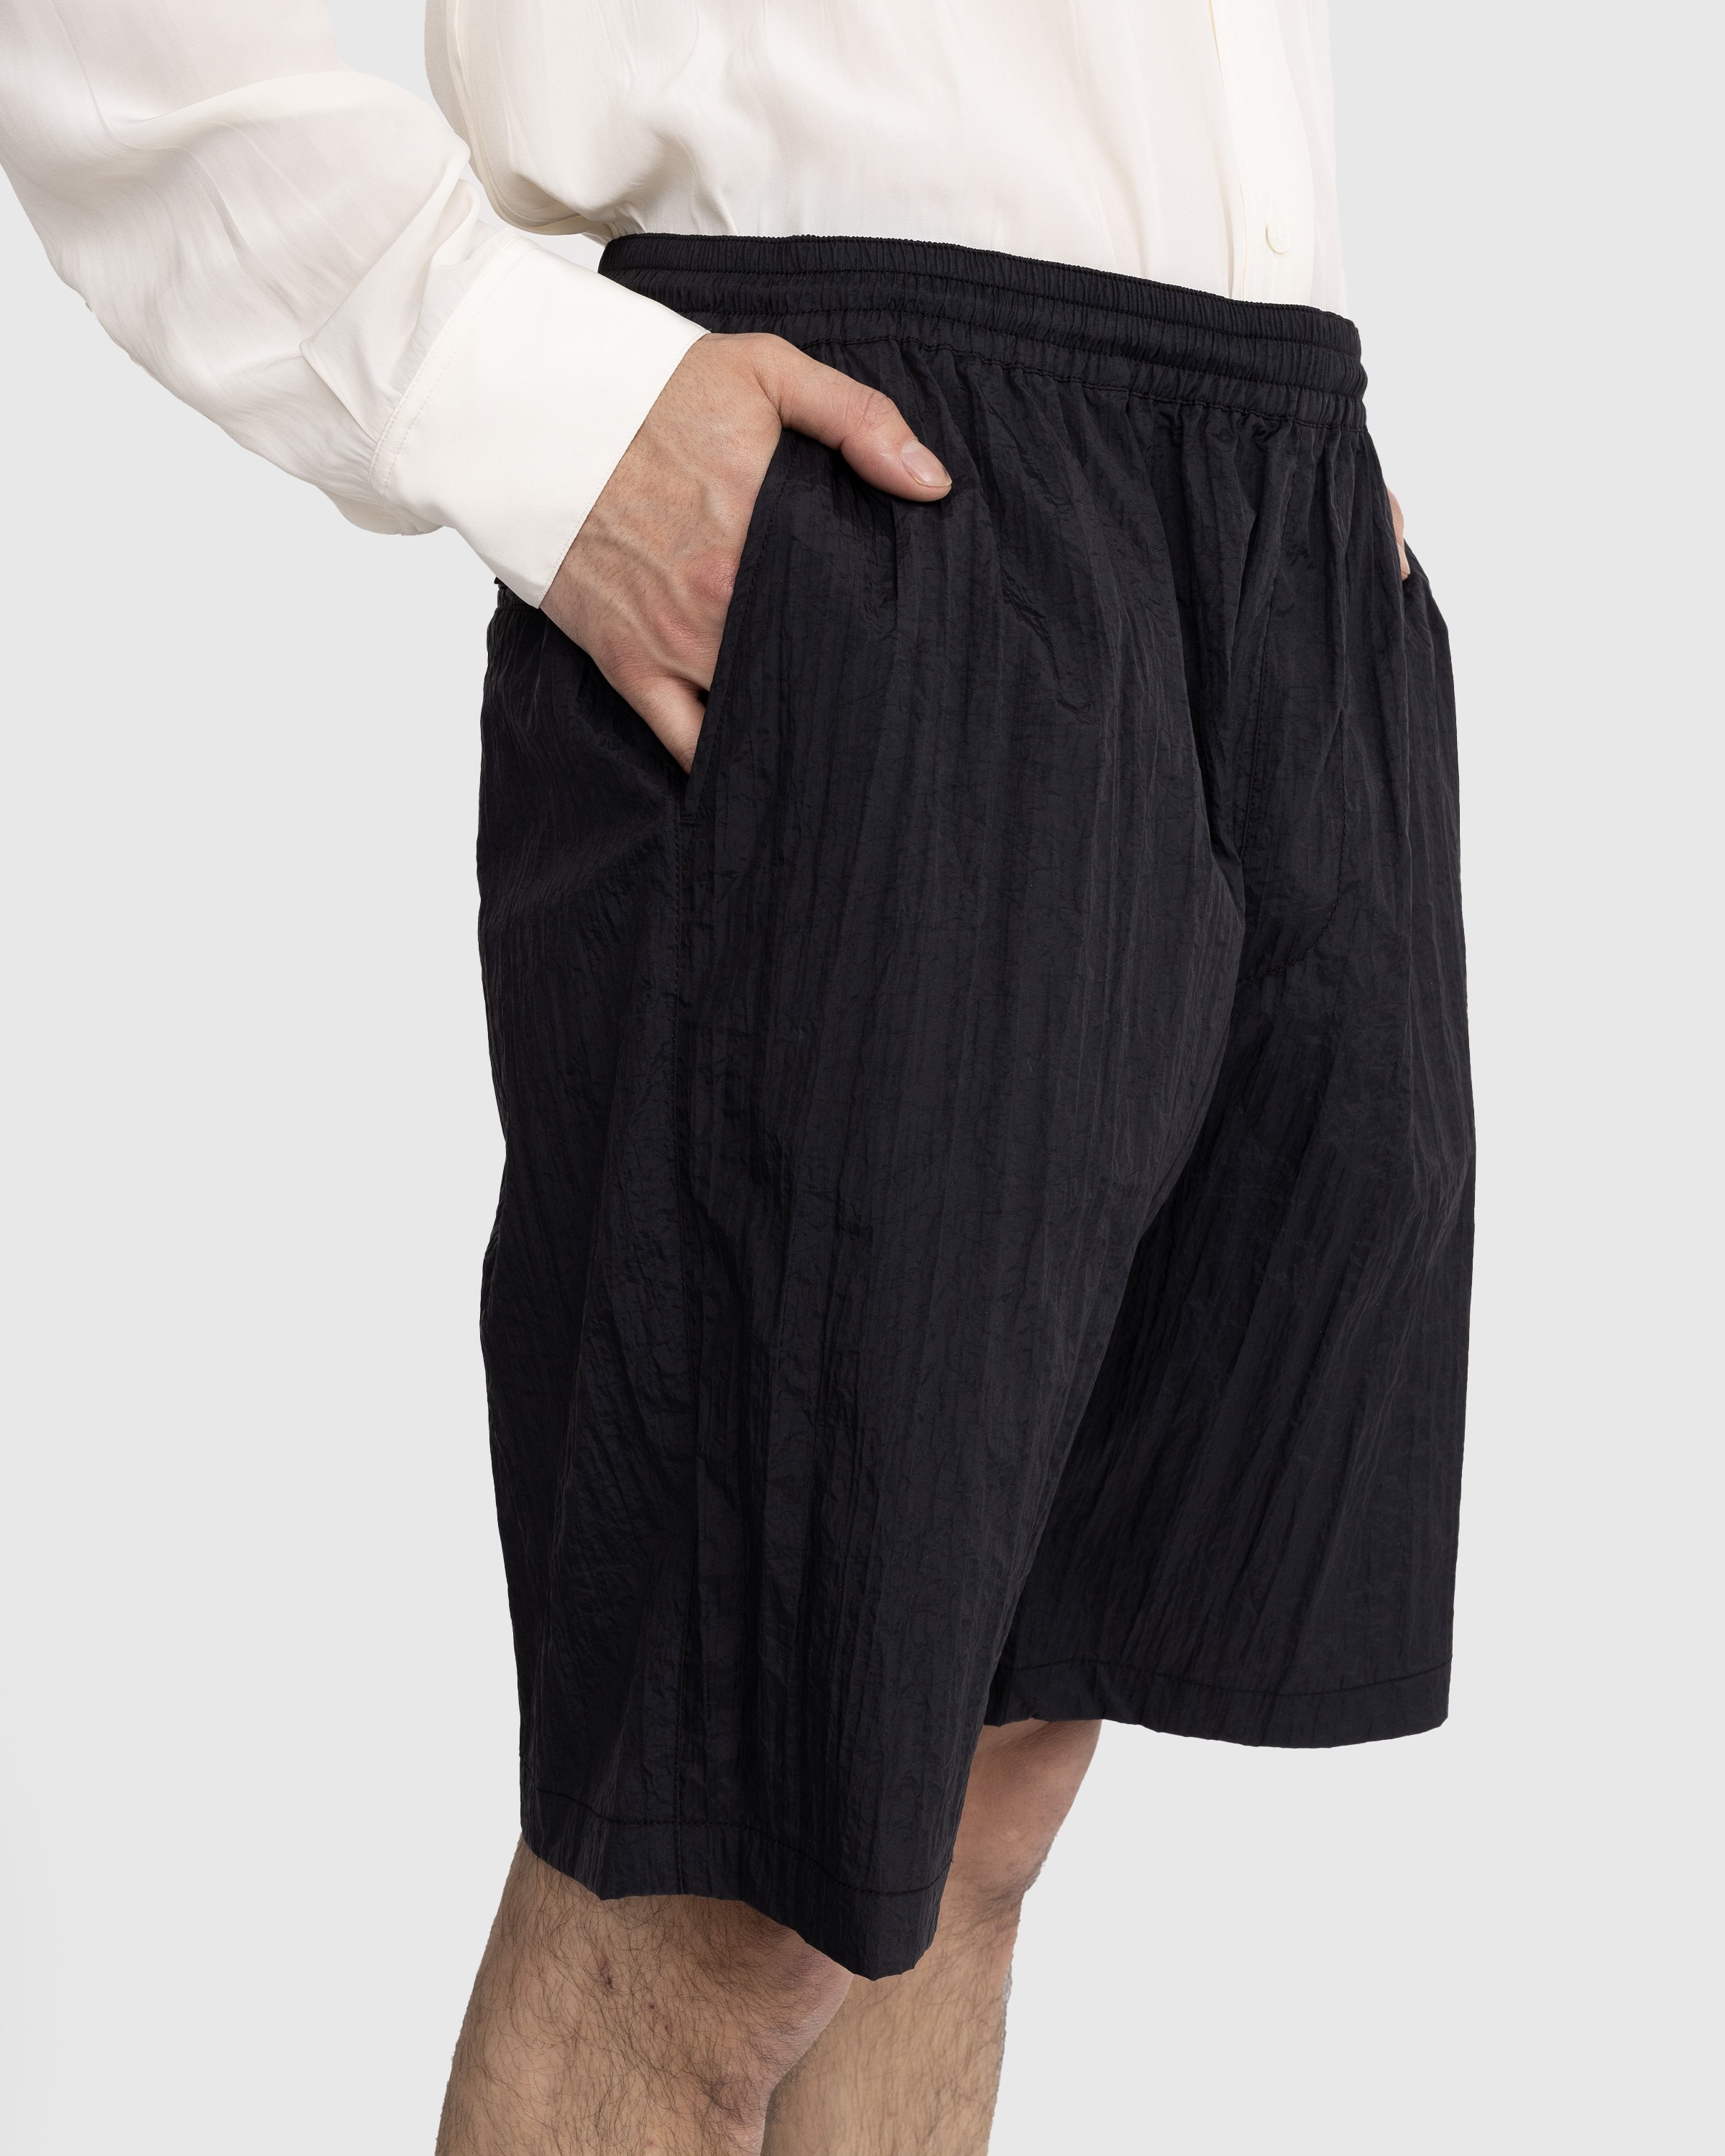 Highsnobiety - Texture Nylon Mid Length Elastic Shorts Black - Clothing - Black - Image 5